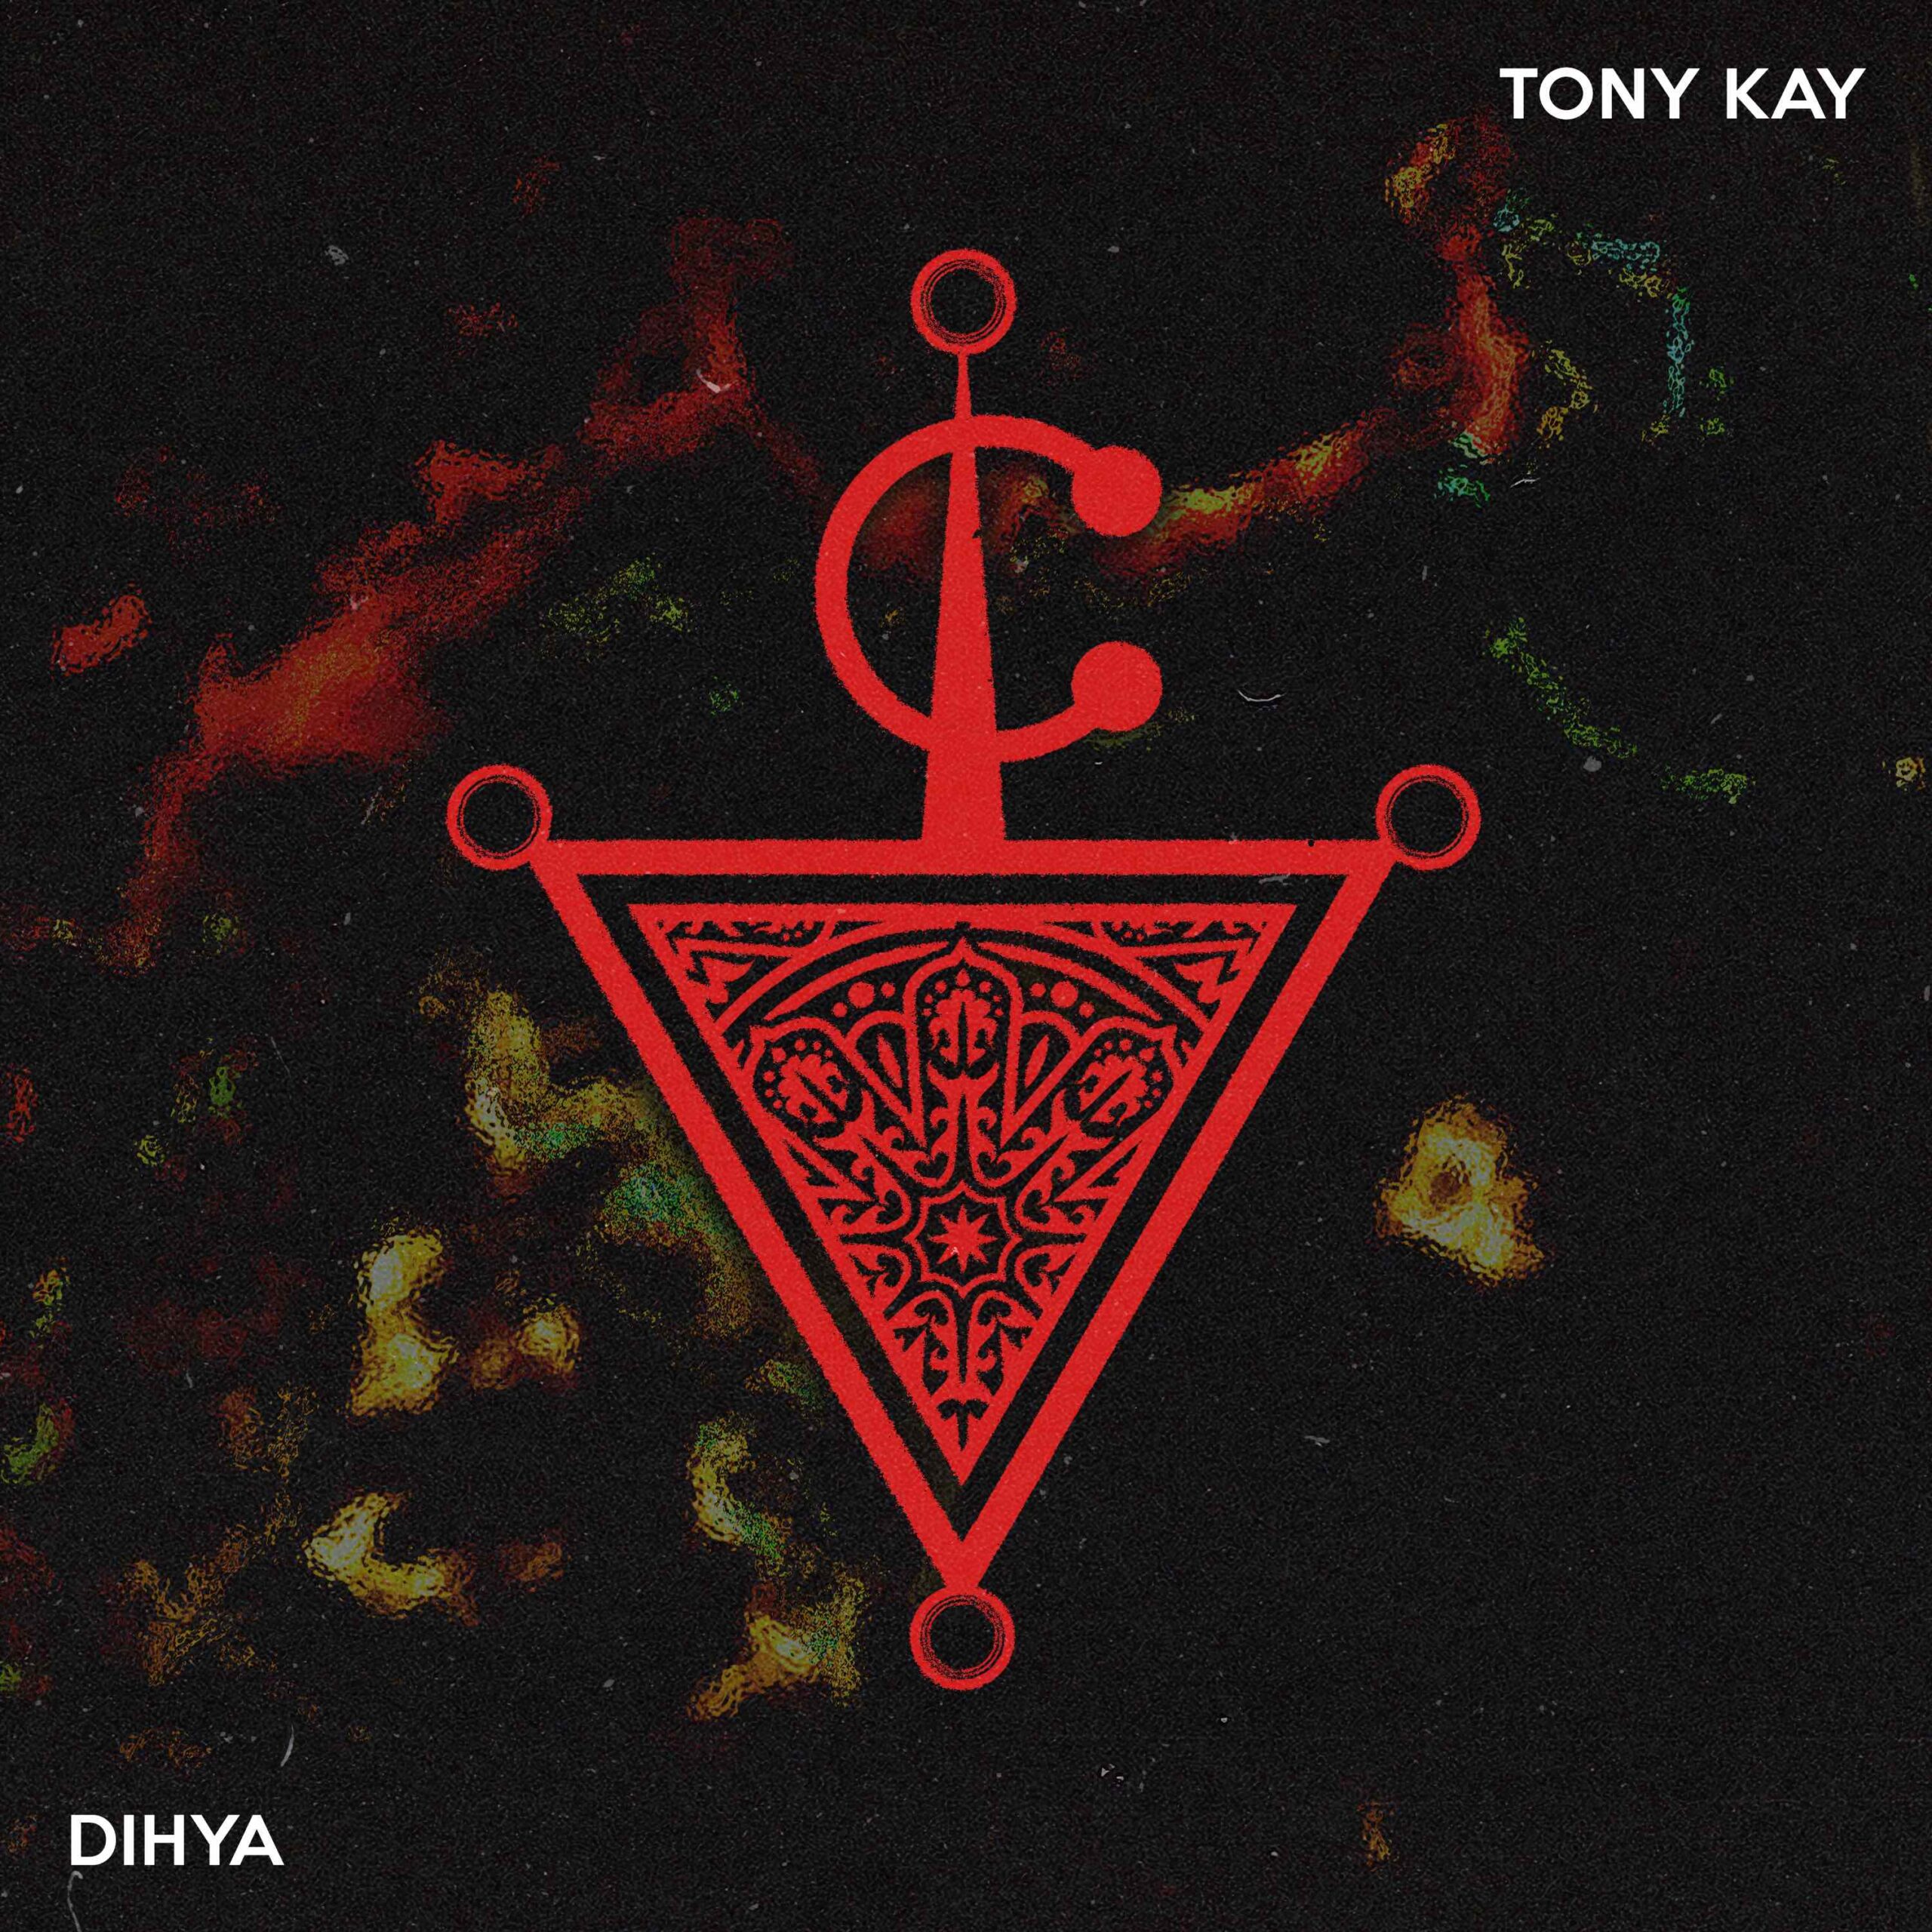 Tony Kay Releases Invigorating Track ‘Dihya'